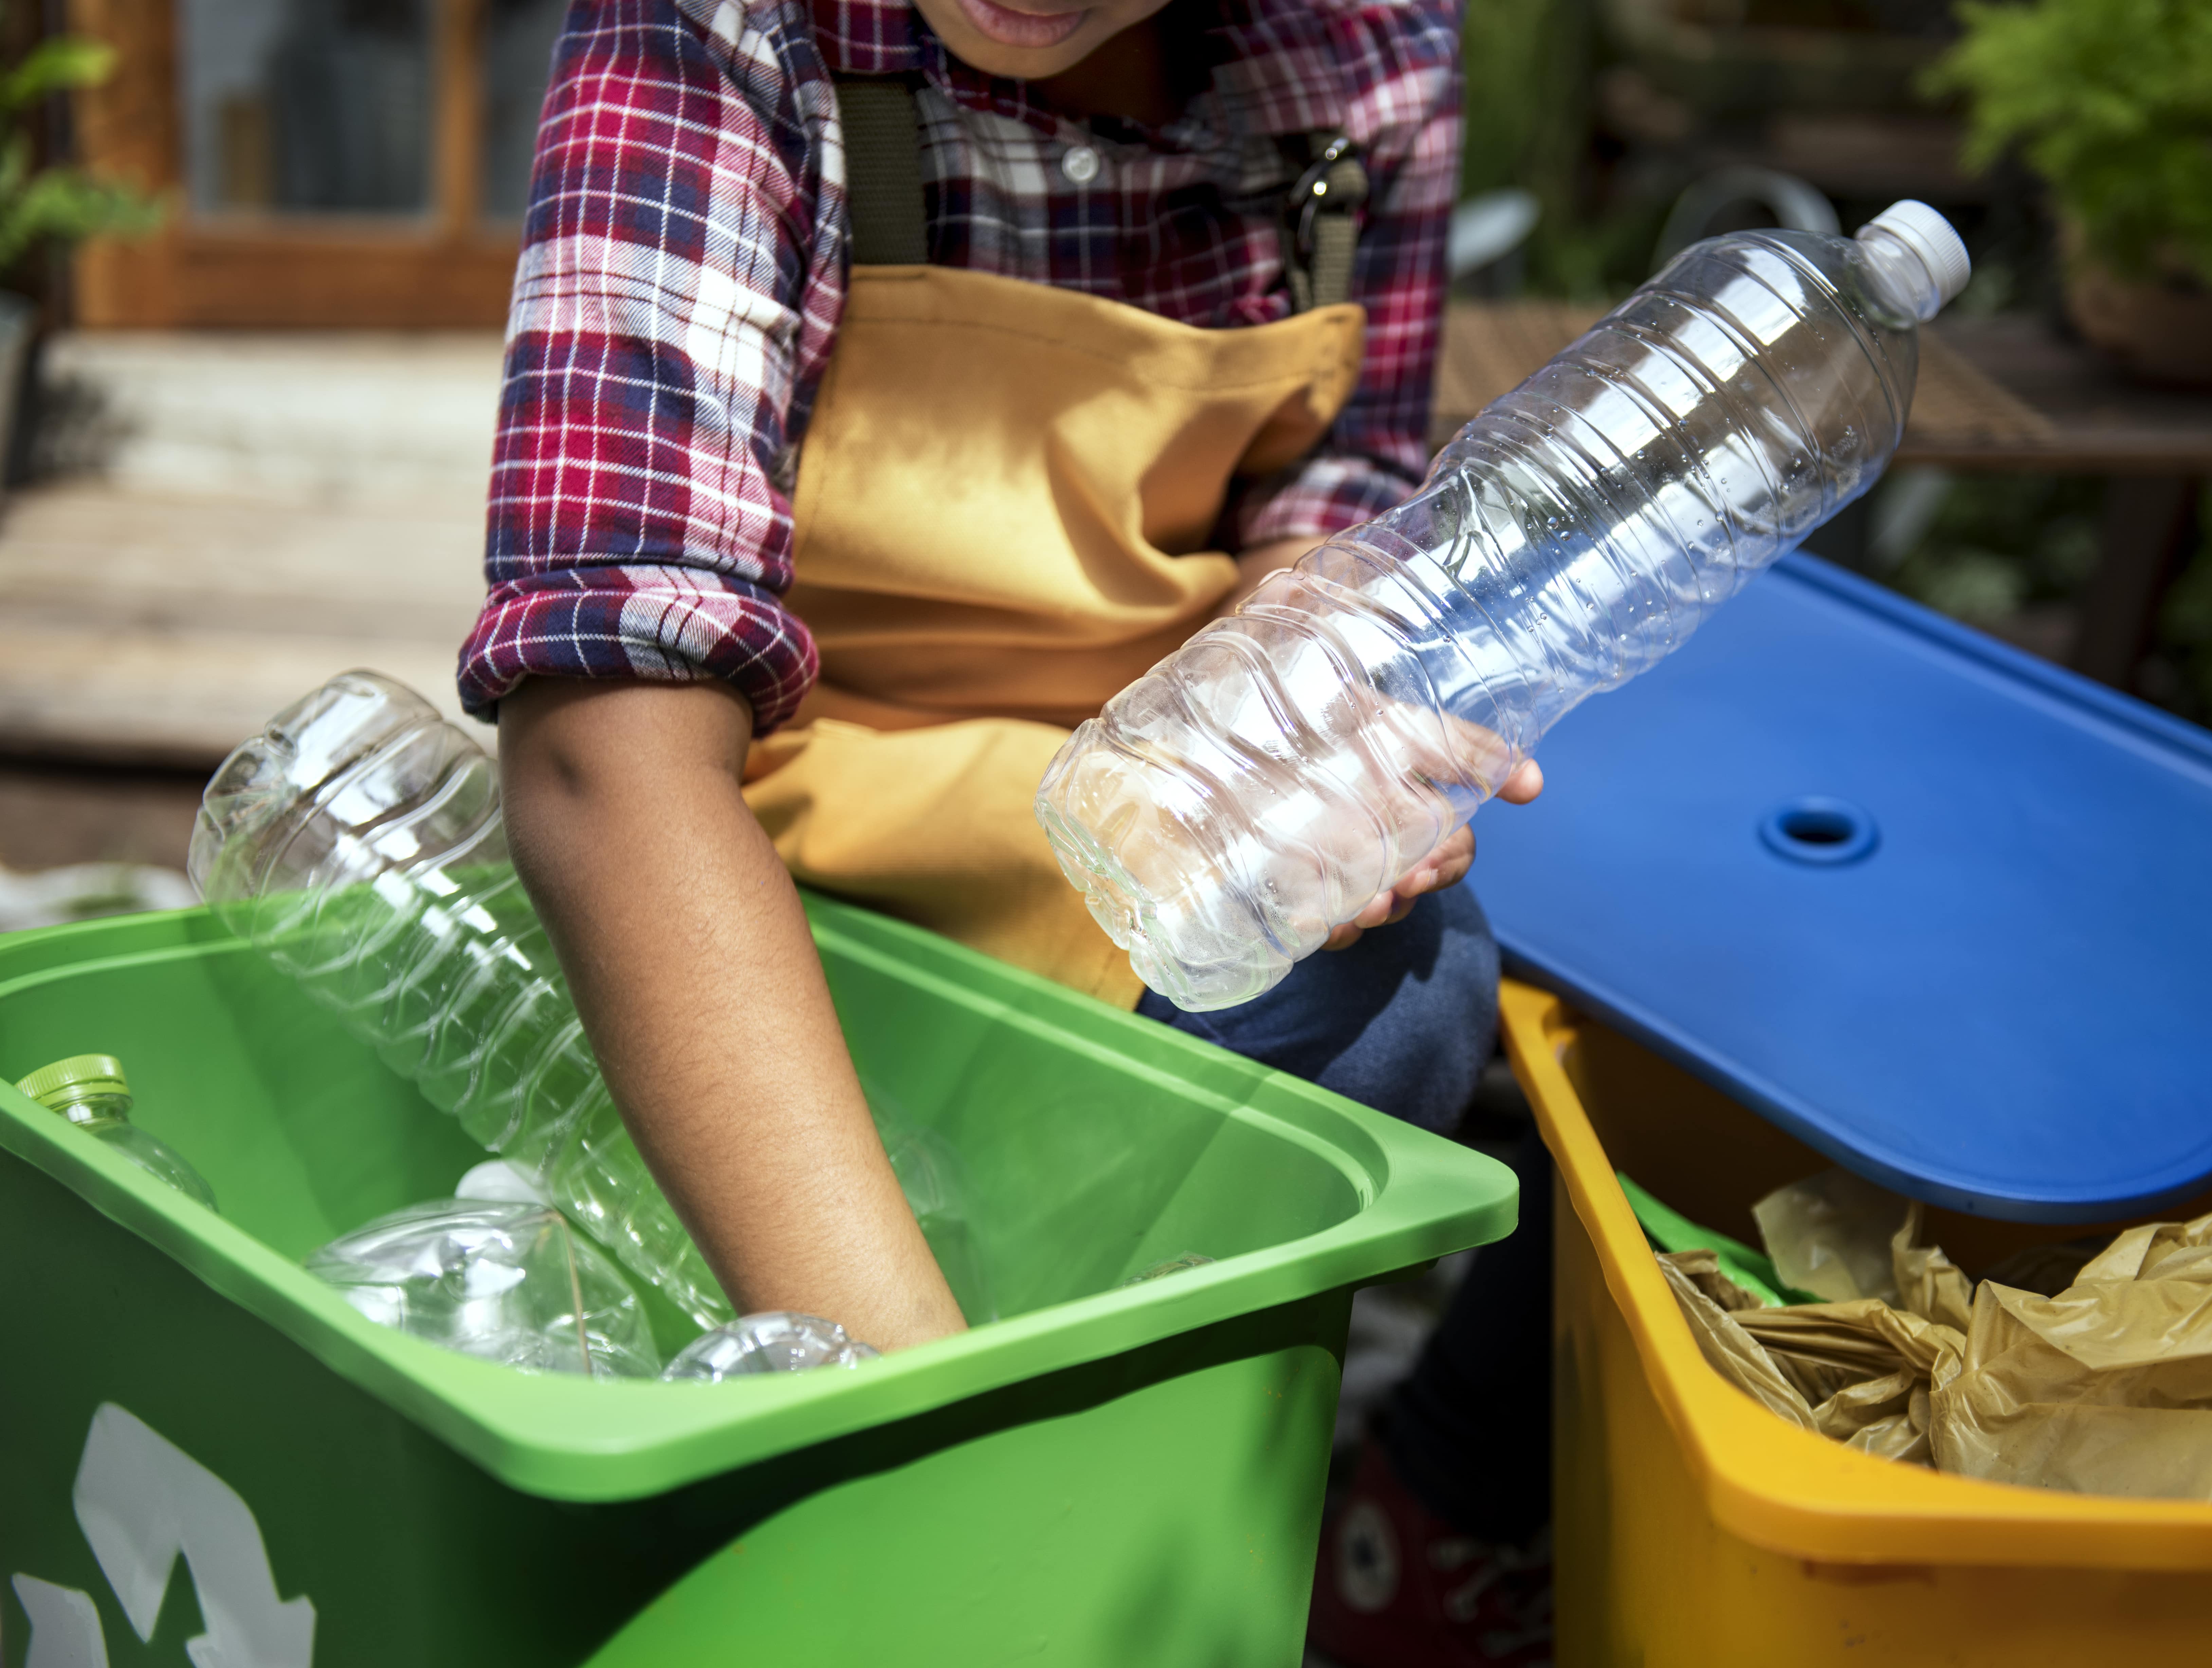 Comment bien recycler et réduire ses déchets